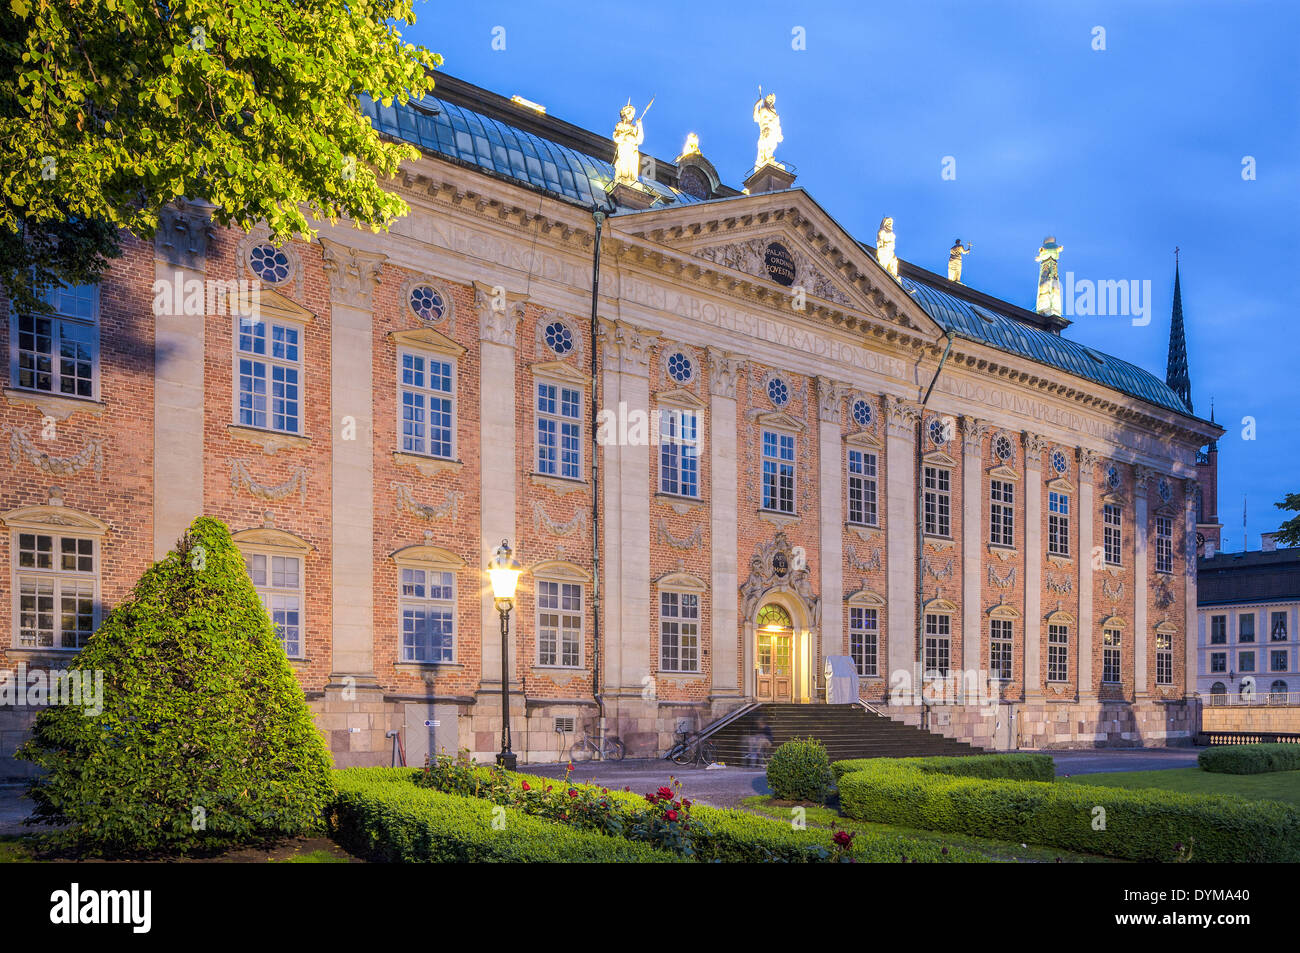 Ritter Haus oder Haus der Adel, Riddarhuset, Versammlungshaus des schwedischen Adels, Altstadt, Gamla Stan, Stockfoto